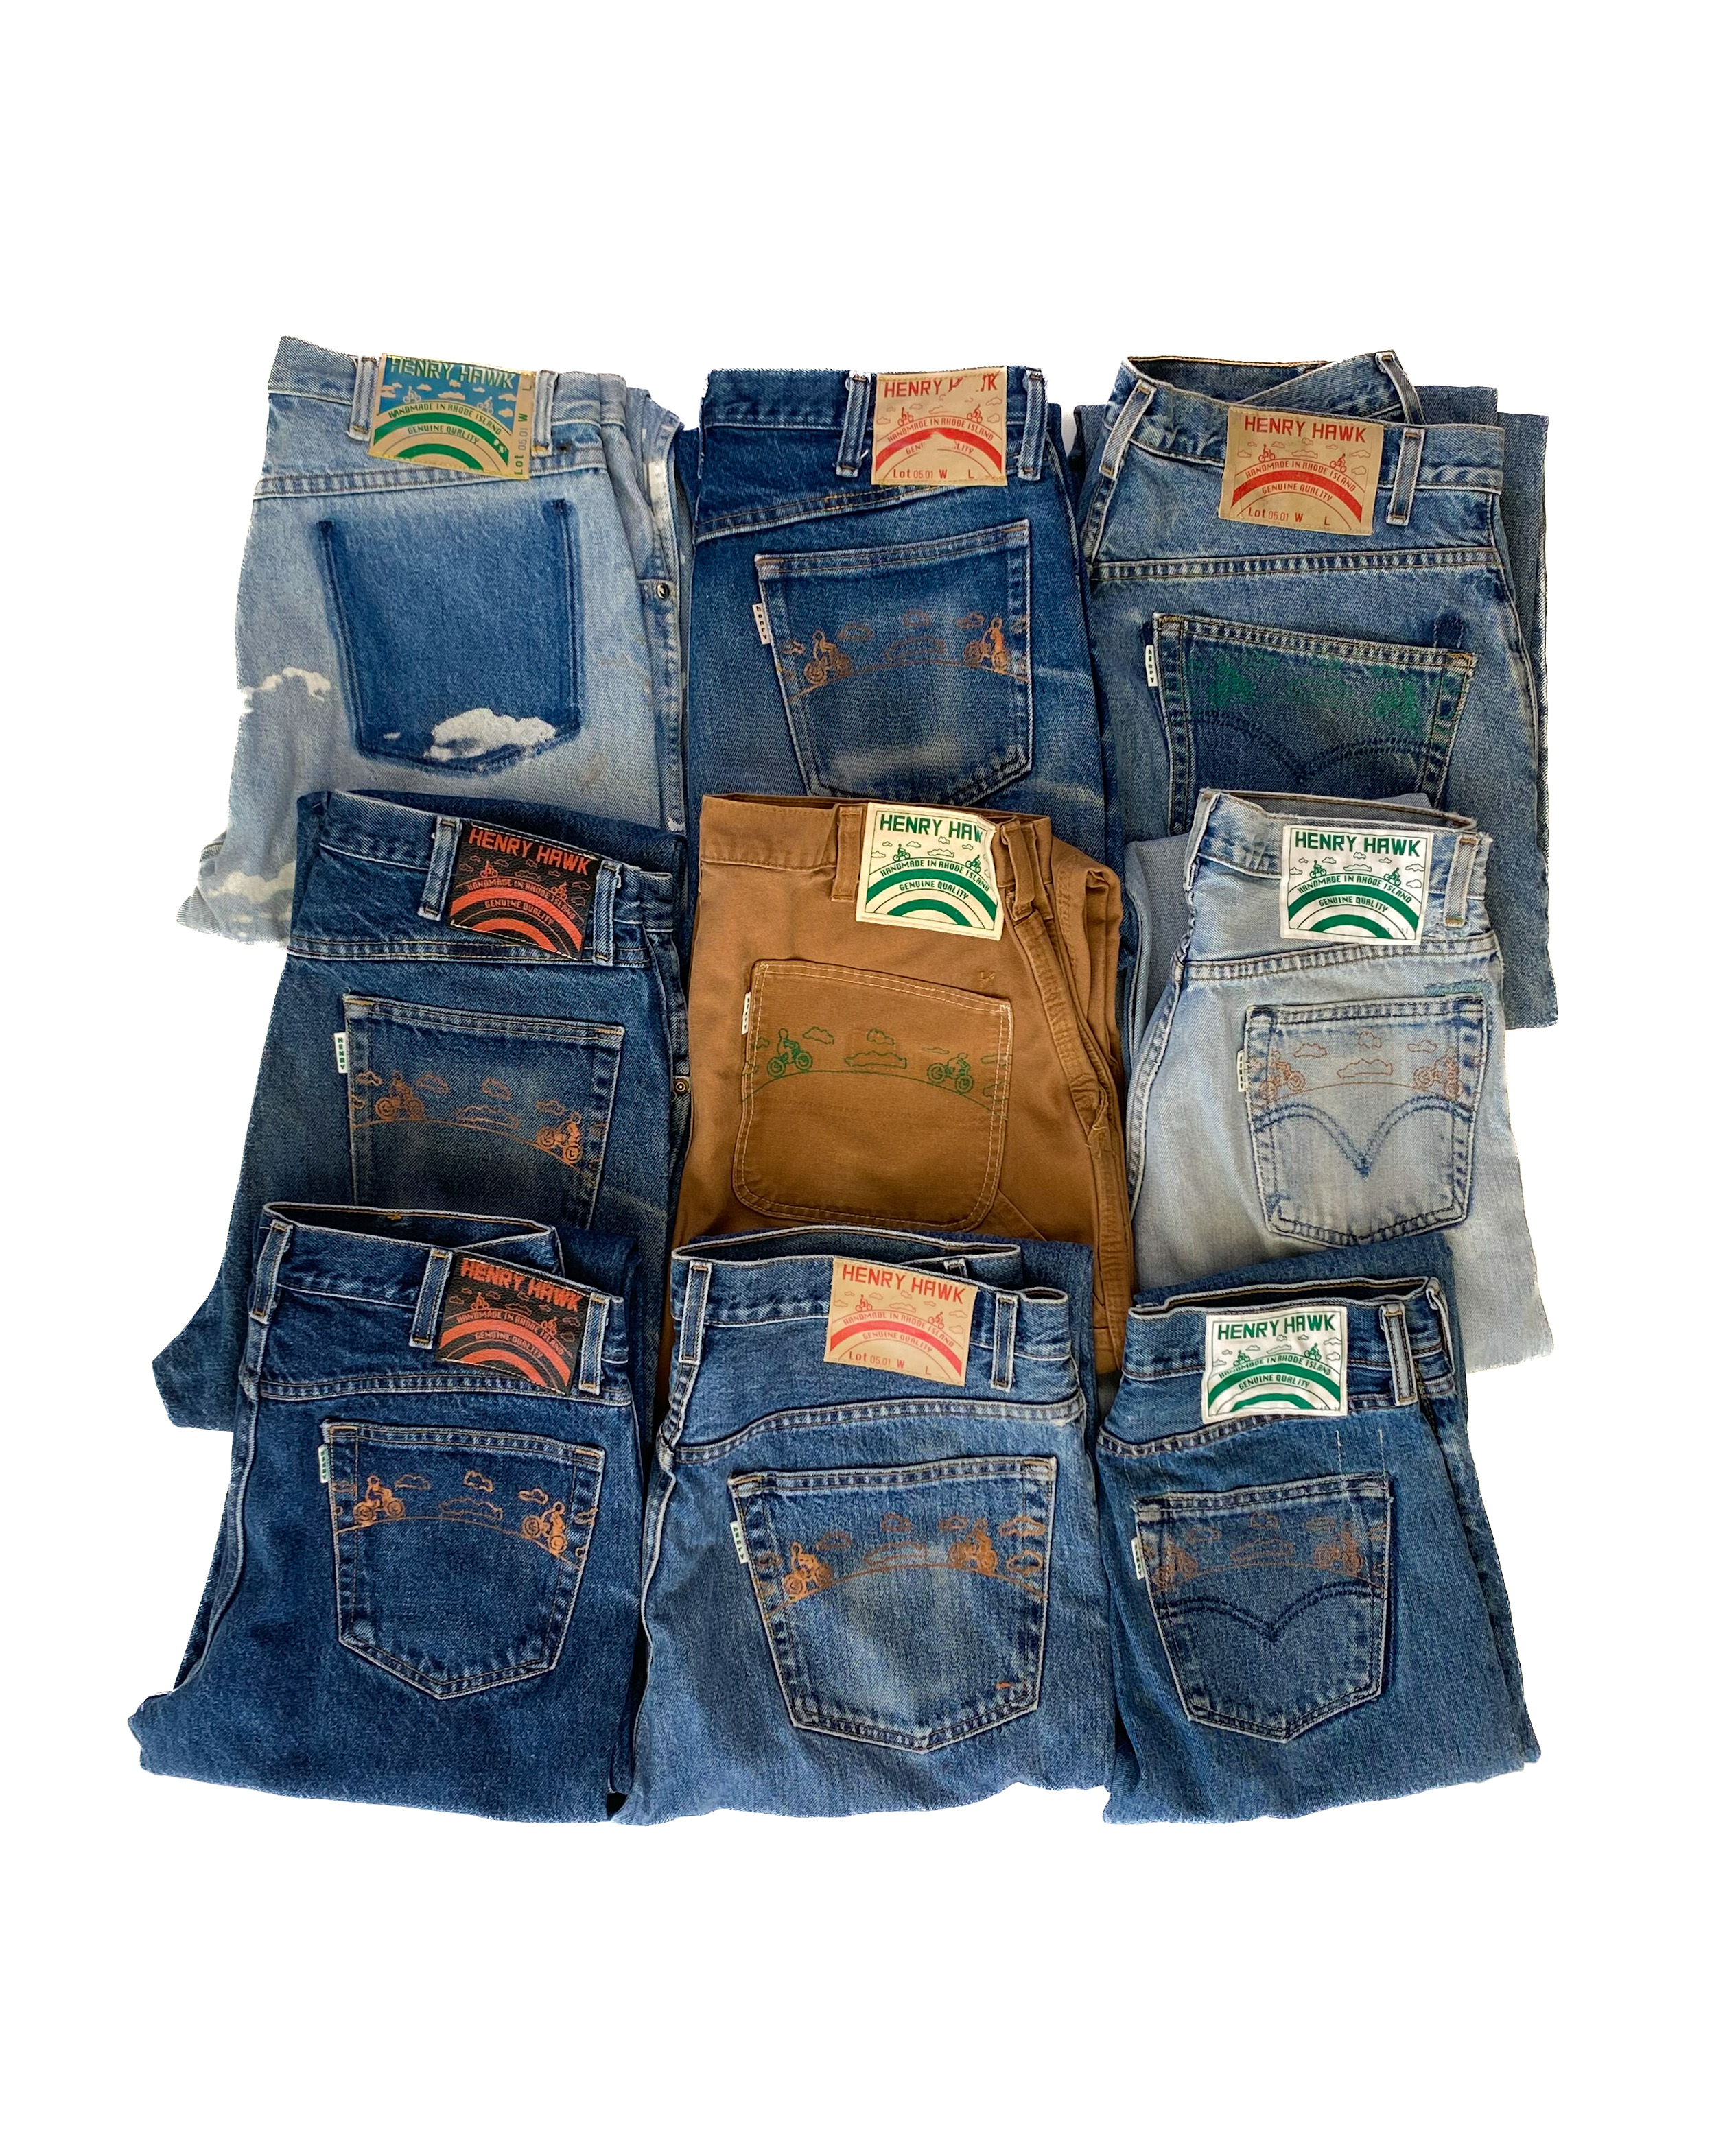 SHOP Hawk jeans Refurbished Henry -